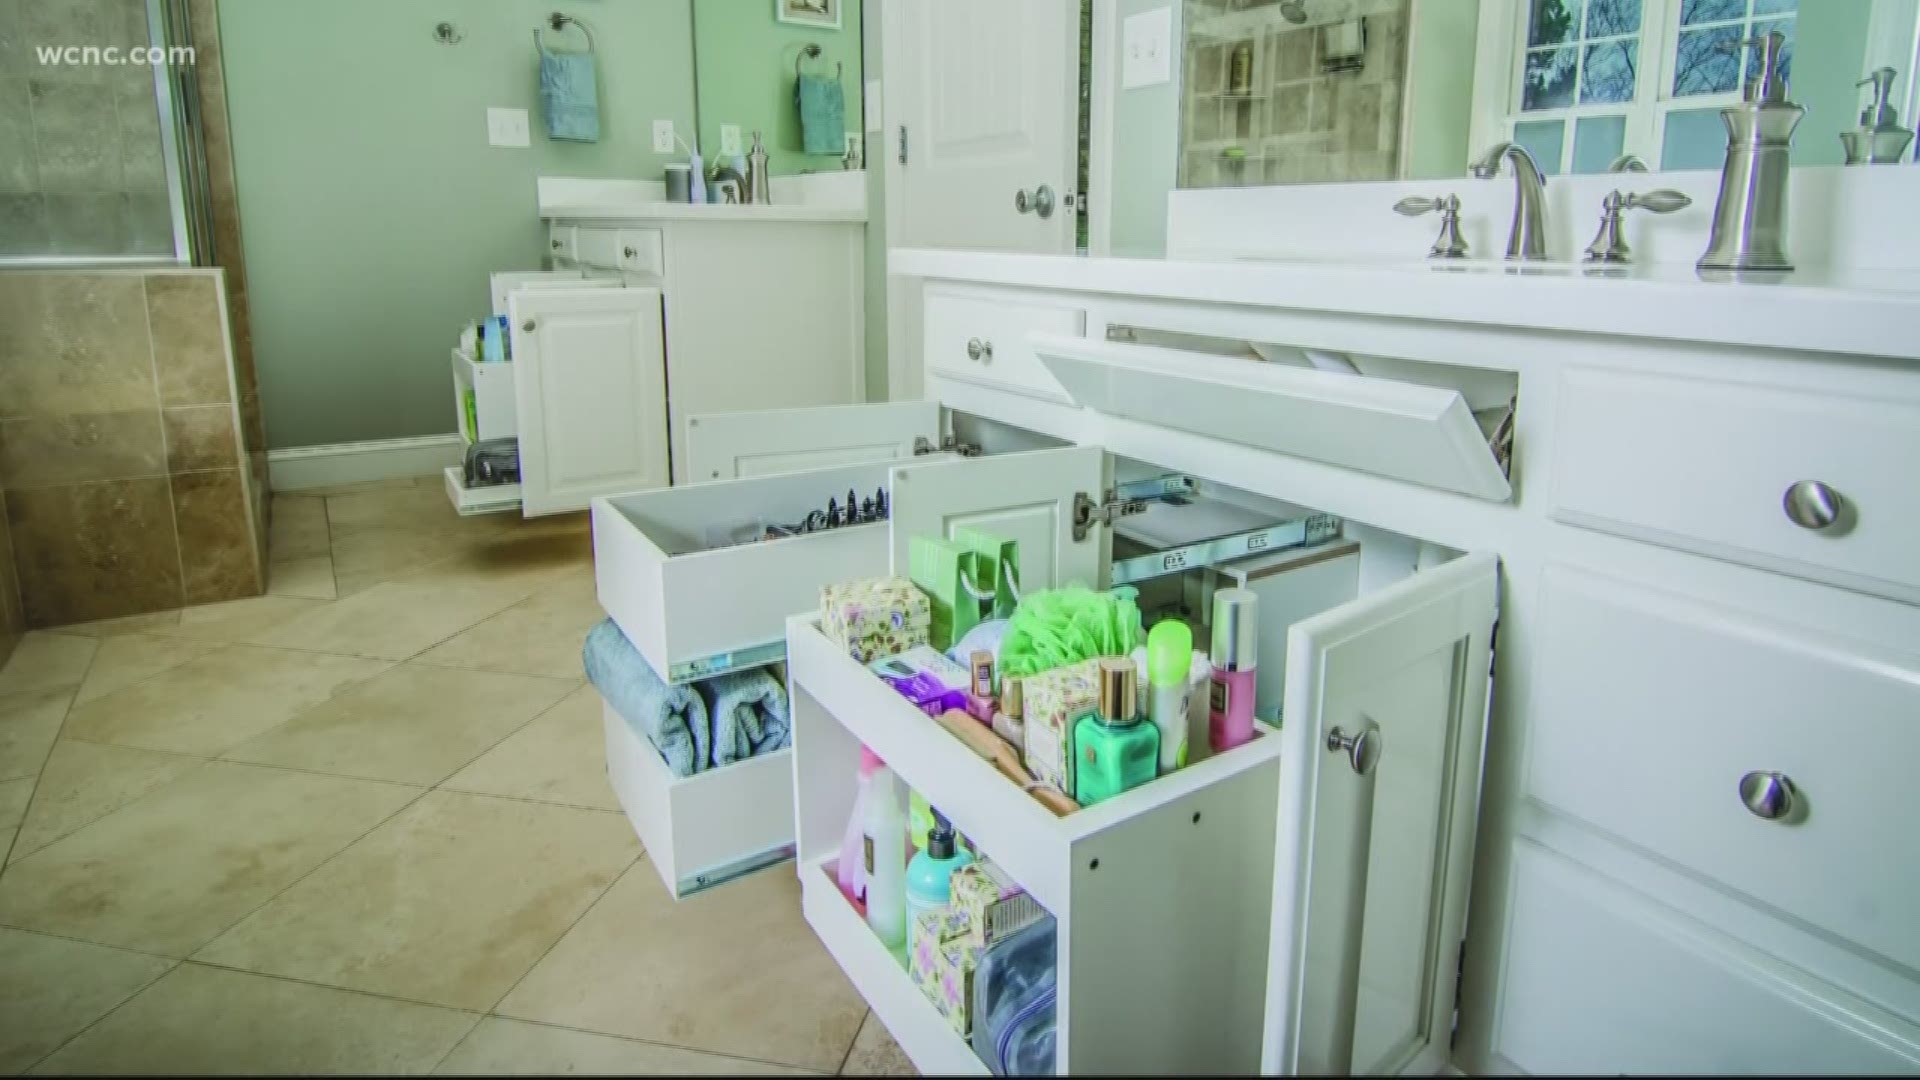 Shelf Genie helps you organize your kitchen and bathroom